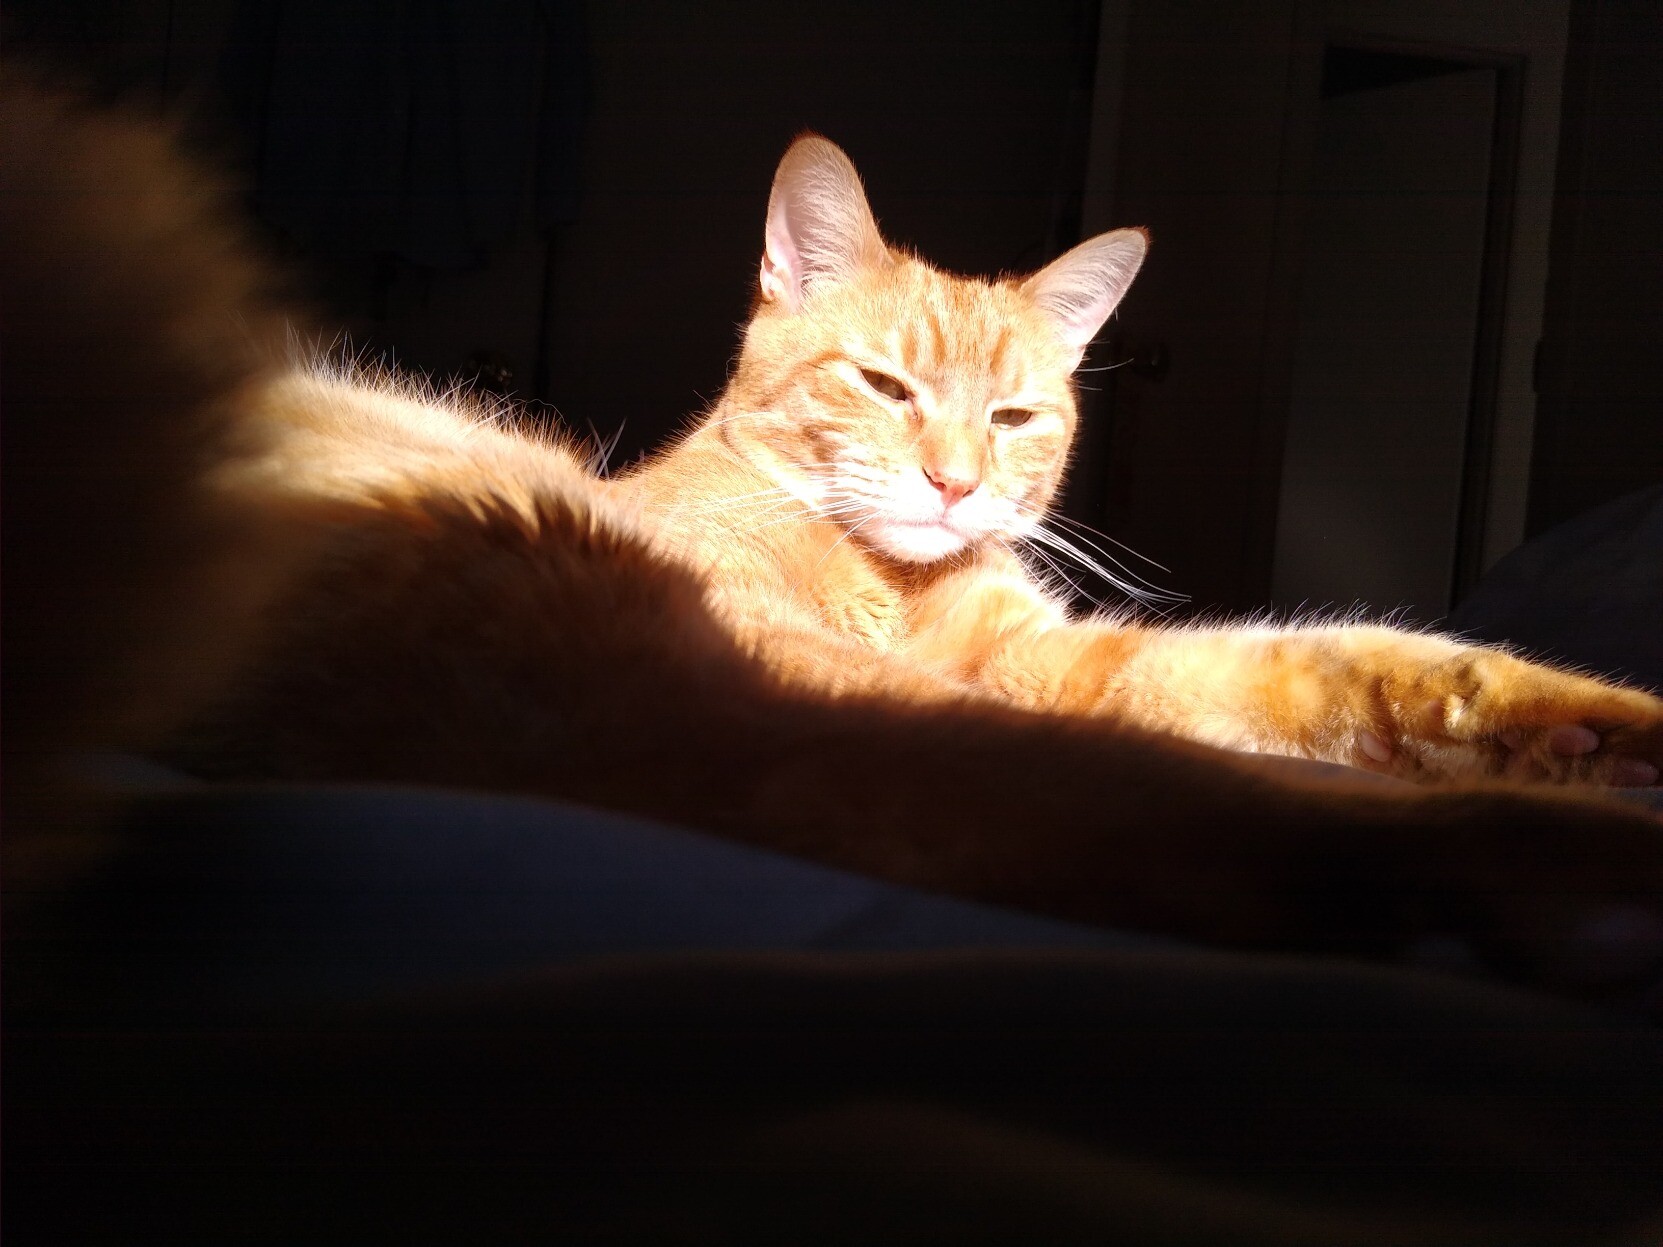 kitty glowing in the sun